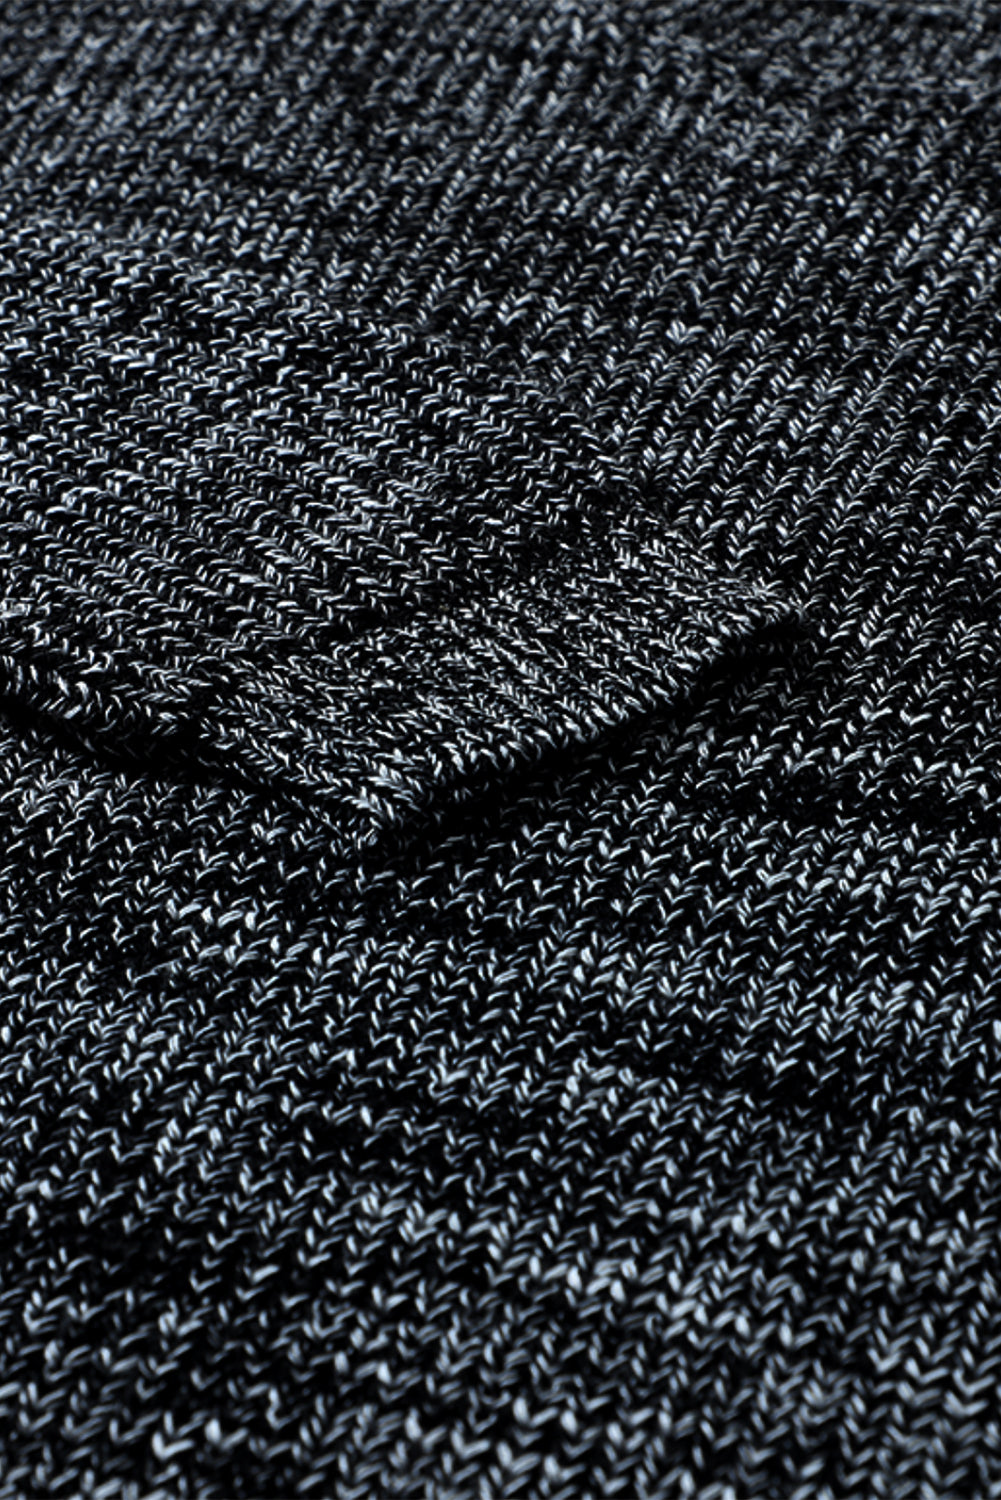 Maglione tunica a maniche lunghe nero scintillante